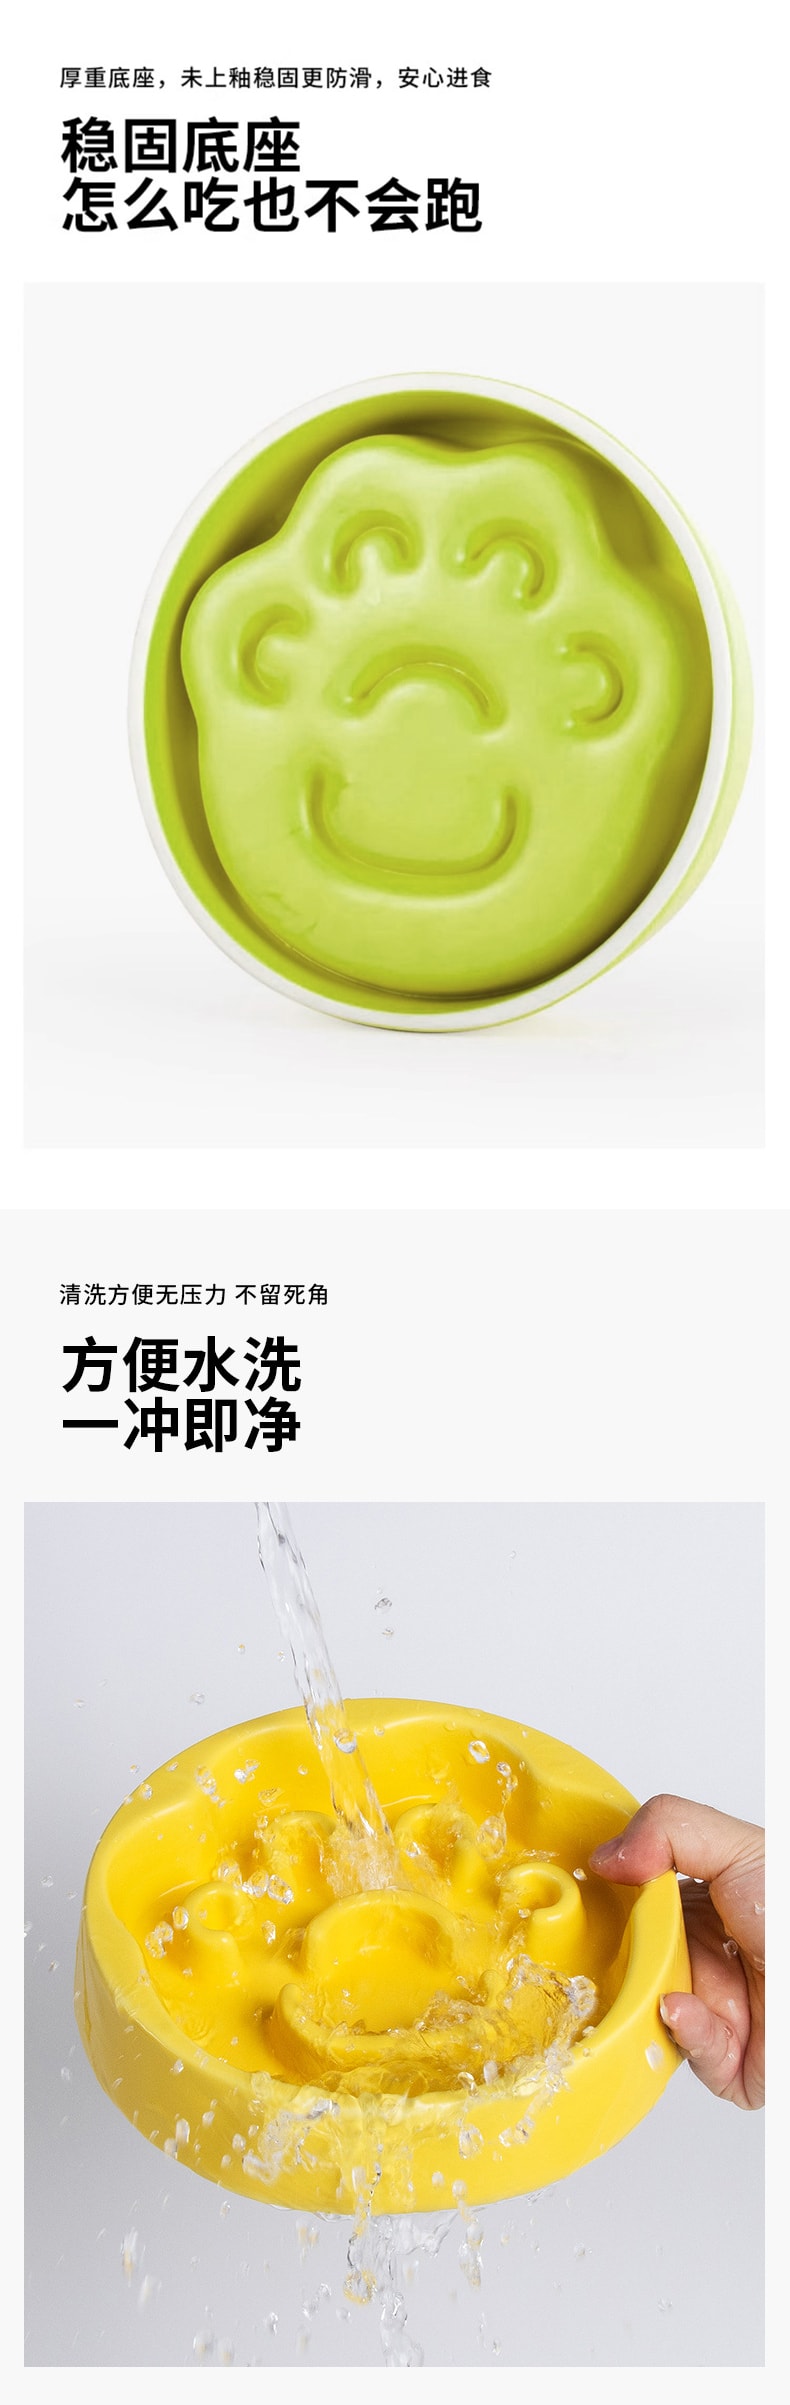 美國 【HiiiGet】陶瓷慢食碗 狗寵物碗狗碗防打翻防噎助消 綠色